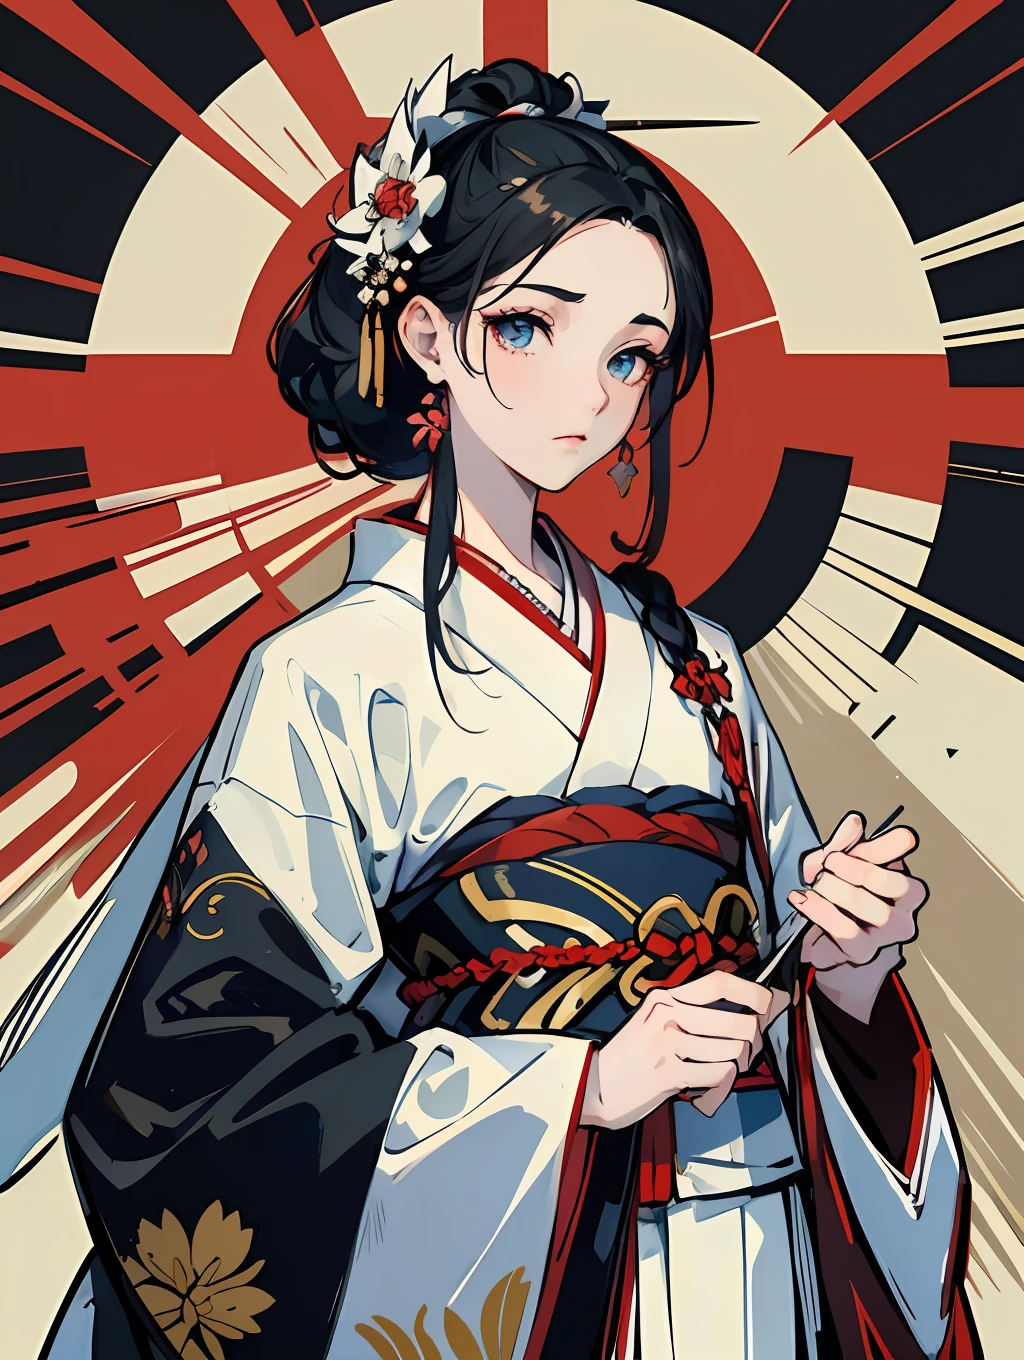 fond d&#39;écran CG extrêmement détaillé, magnifique unité japonaise, chef-d&#39;œuvre, meilleure qualité, anglais dynamique, poses dynamiques, [:(une fille japonaise dans un beau kimono blanc, cheveux noirs détaillés, yeux bien définis et anatomiquement corrects):1.3].